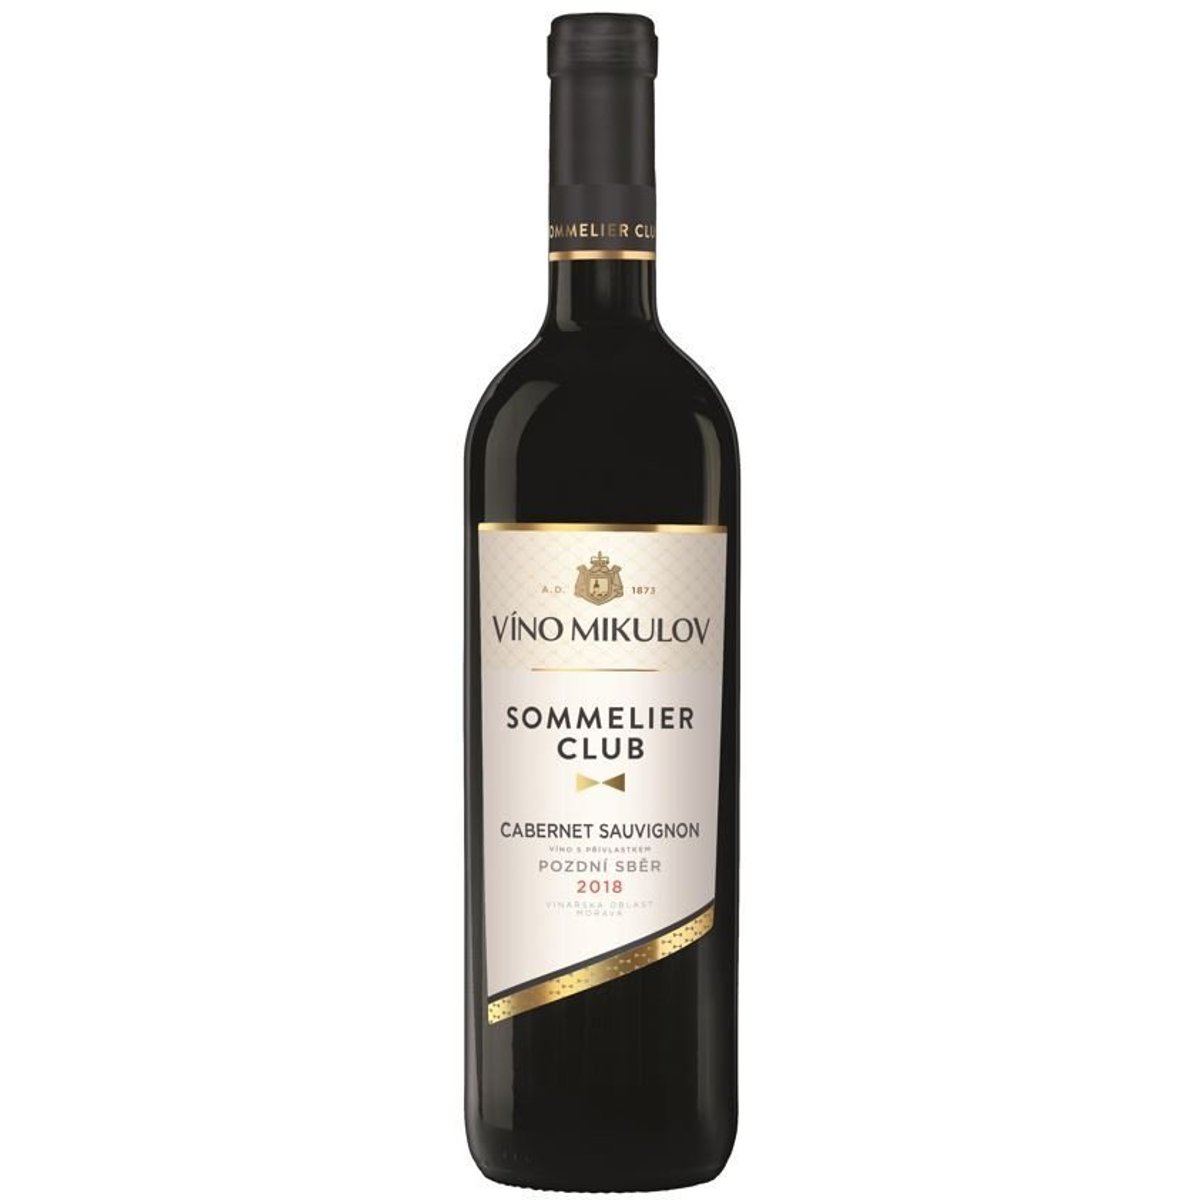 Víno Mikulov Sommelier Club Cabernet Sauvignon pozdní sběr